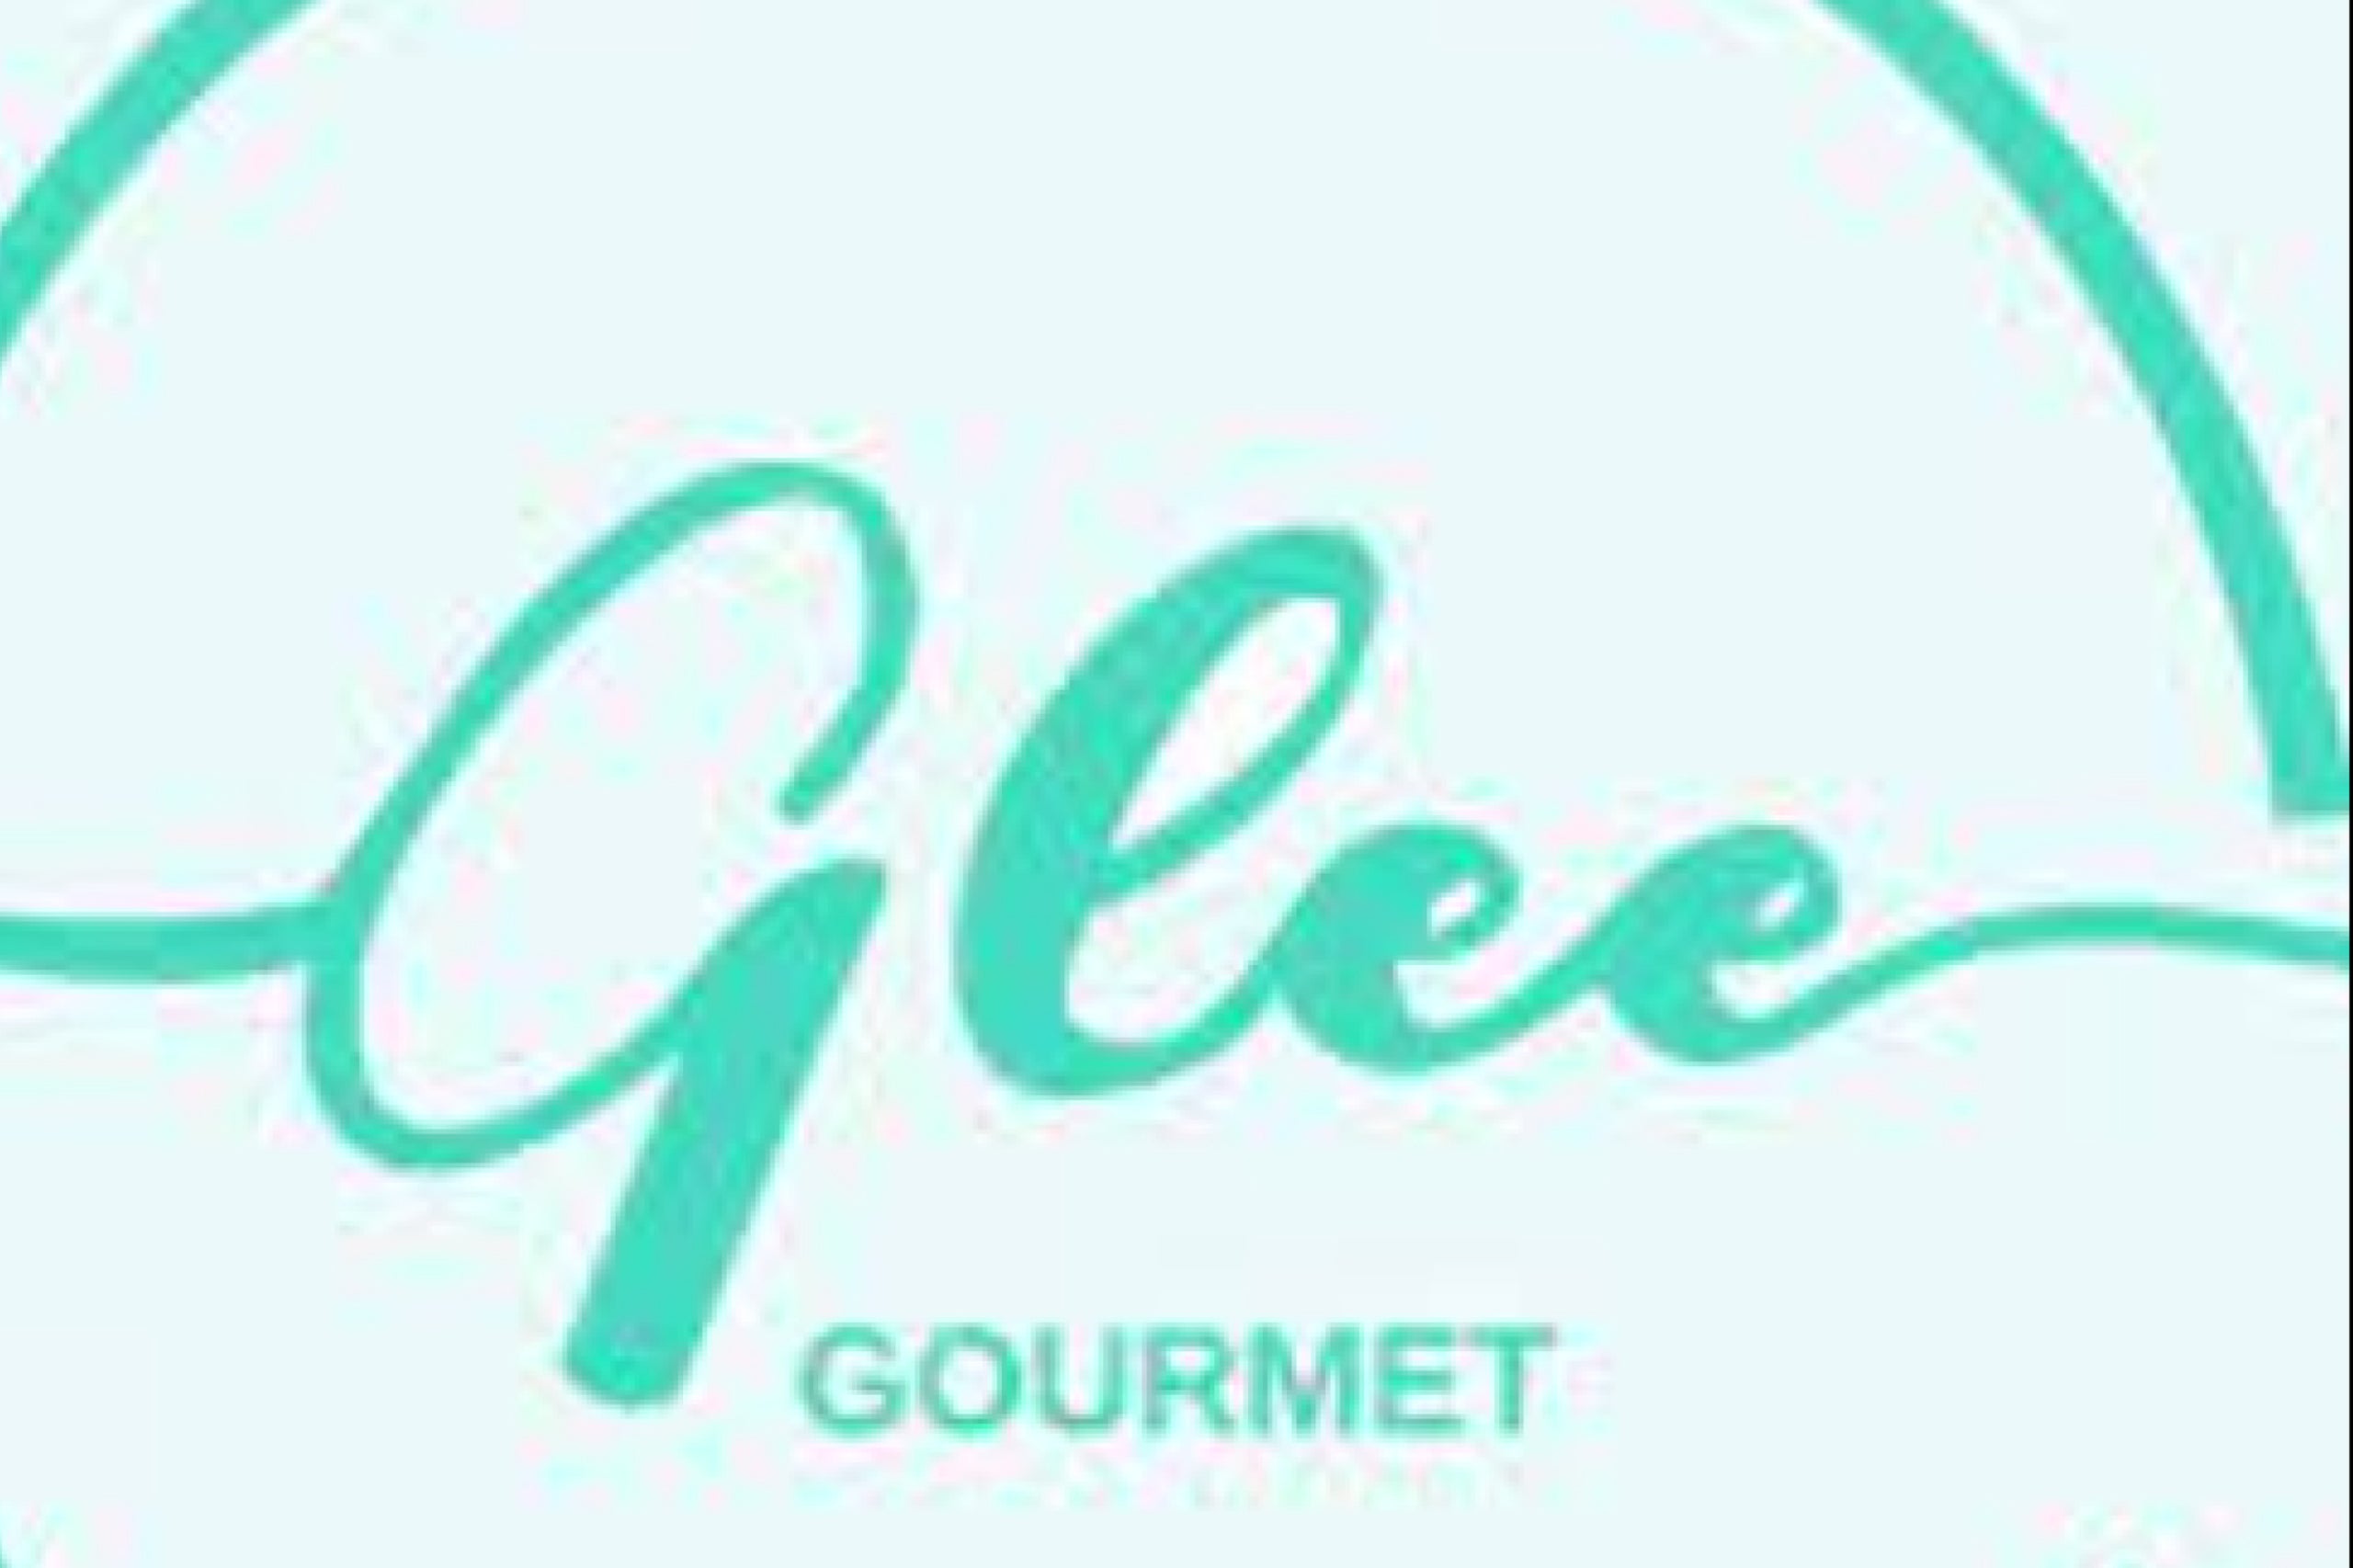 GLEE GOURMET